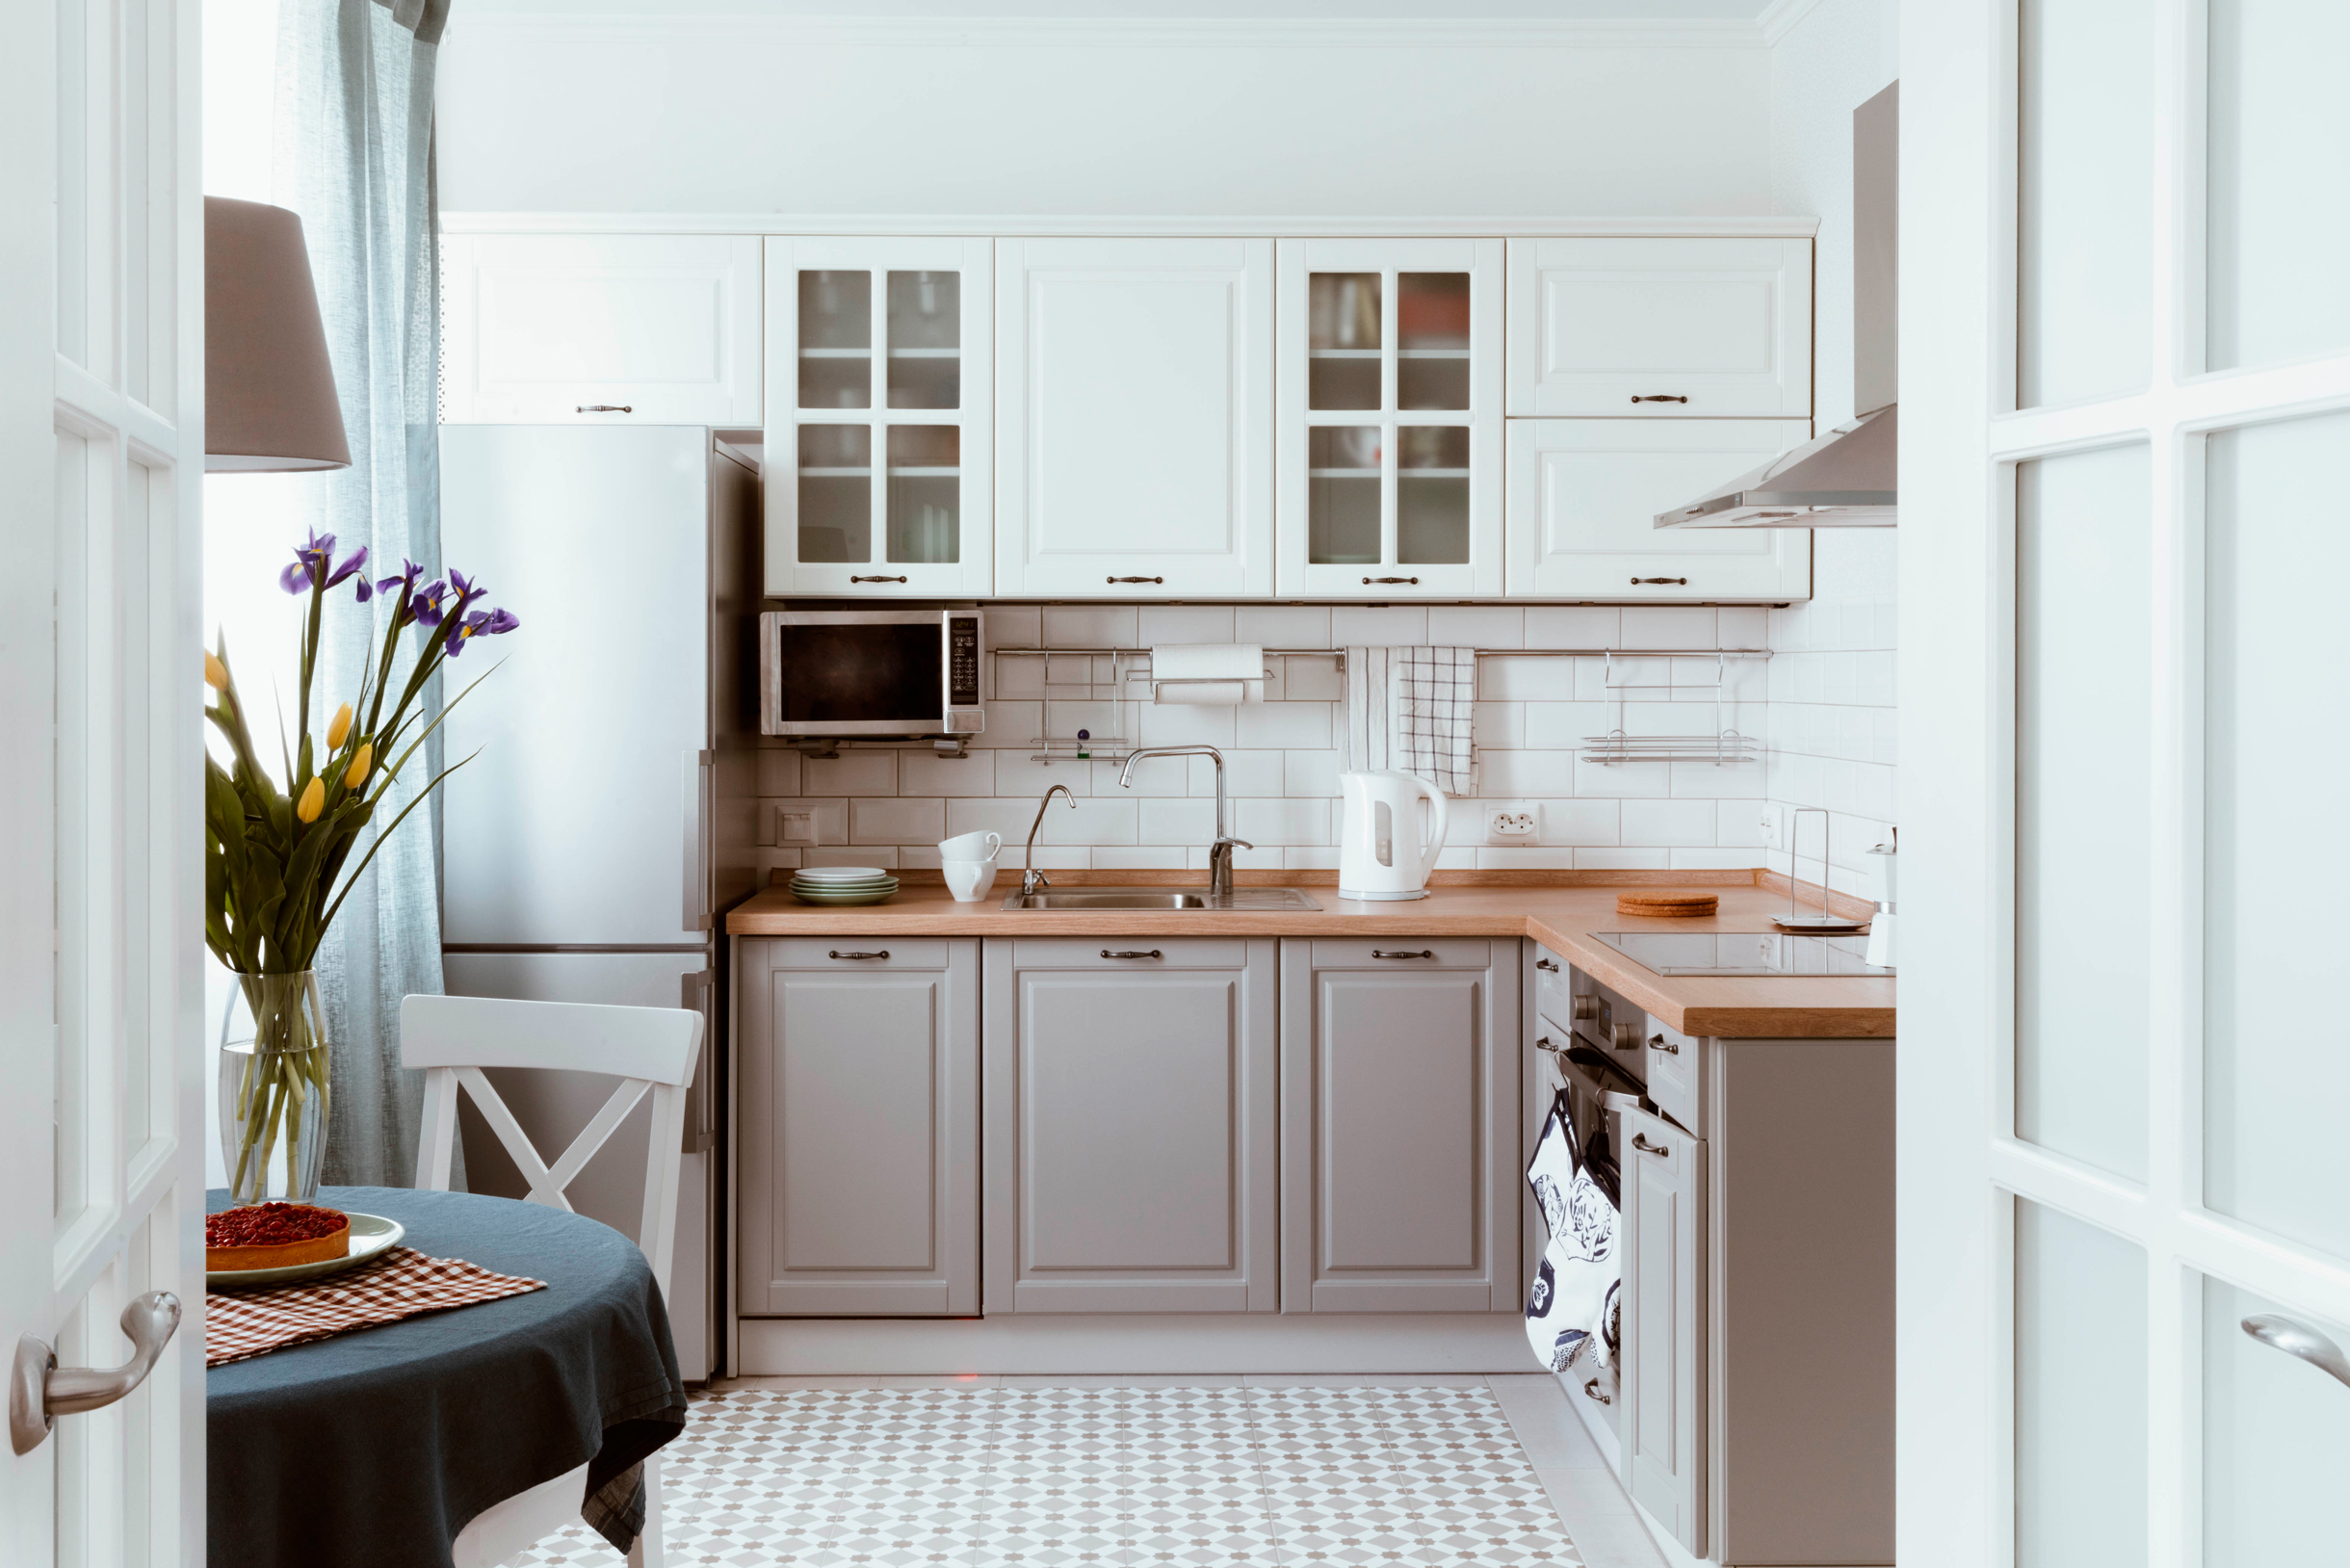 Скандинавский стиль отлично подойдет для небольших кухонь. При желании верхние ящики можно сделать высокими до потолка или убрать и заменить на полки. Фотография: tartanparty / Shutterstock / FOTODOM